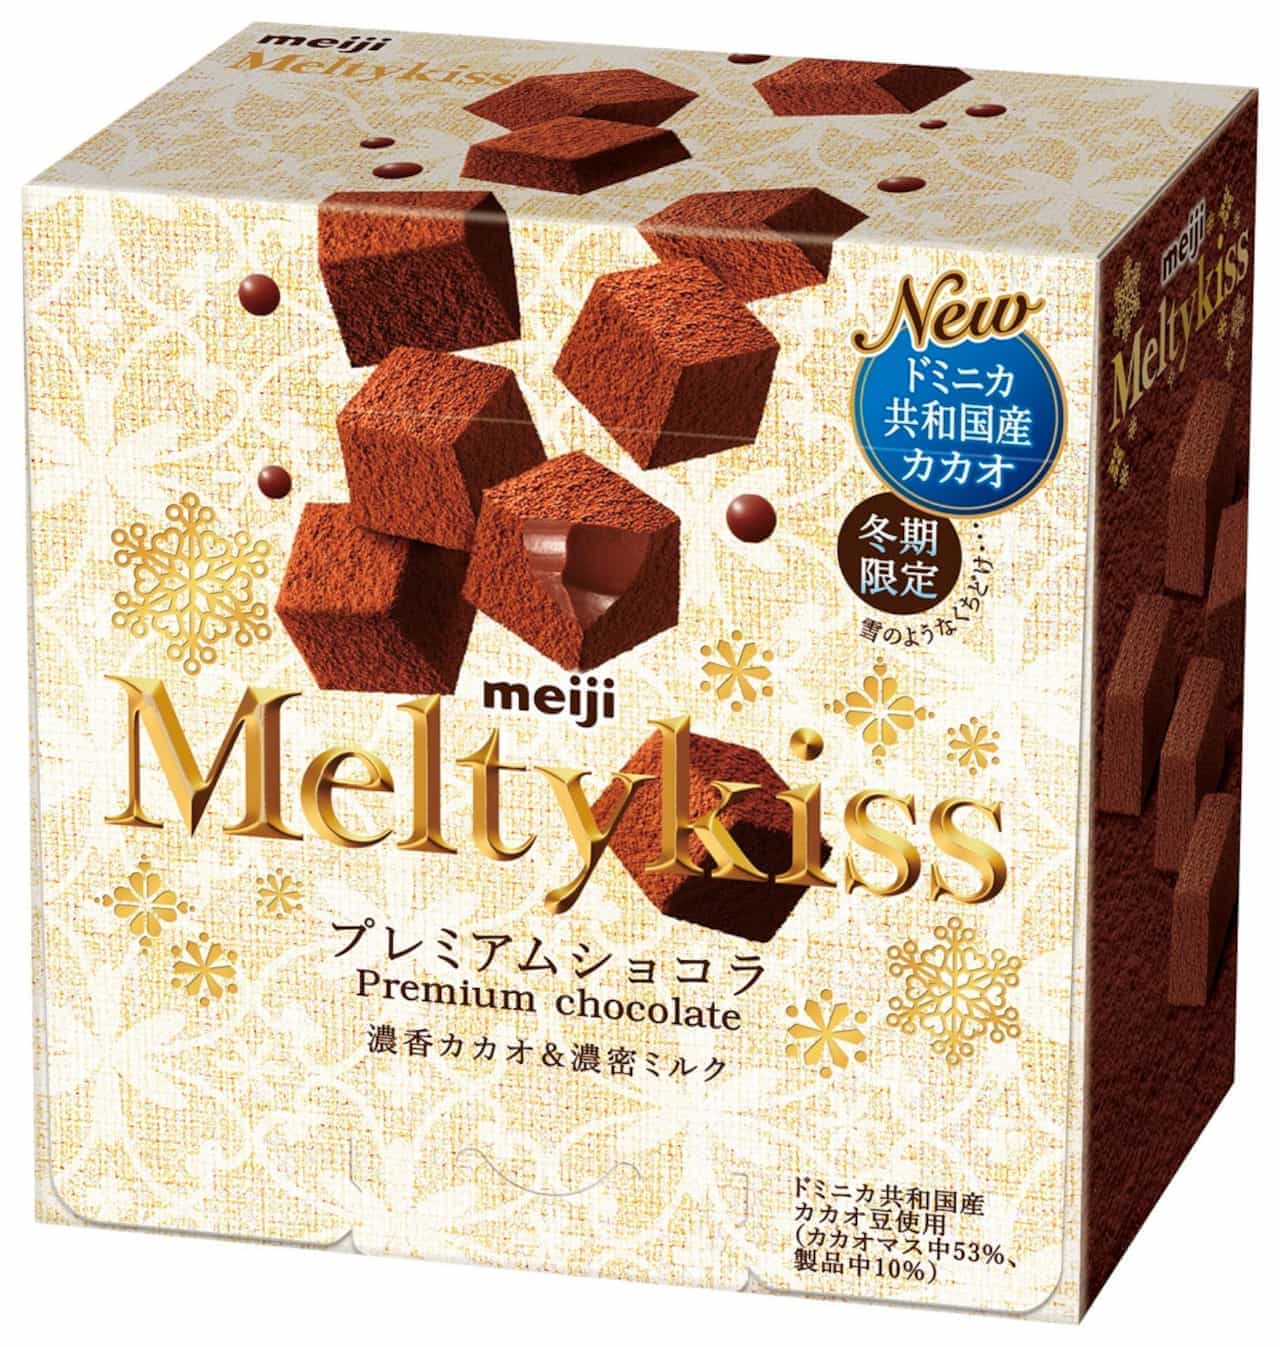 Meiji Winter Limited "Melty Kiss"